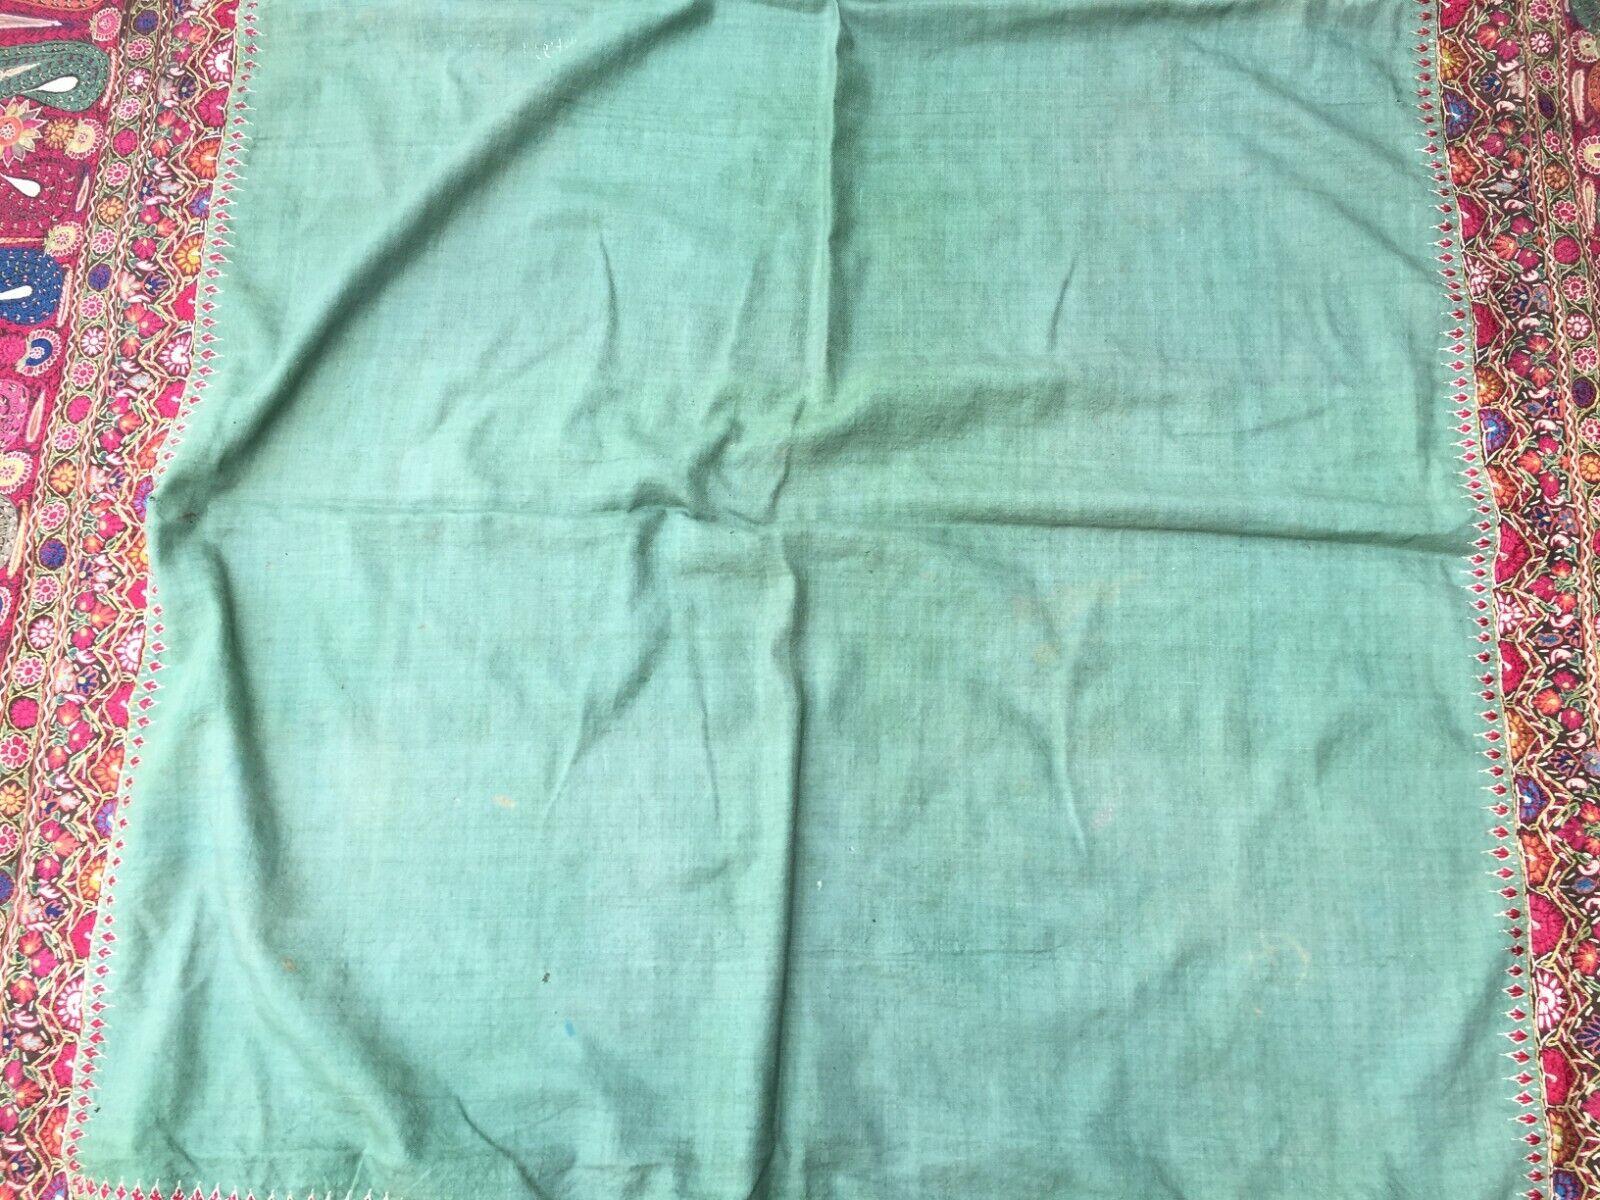 Handgefertigter antiker indischer Kaschmir-Schal:

Design und Farben:
Dieser quadratische Schal ist ein Zeugnis der indischen Kaschmir-Kunstfertigkeit.
Die dominierende Farbe ist ein sattes Grün, das eine ruhige und erdige Leinwand schafft.
Das